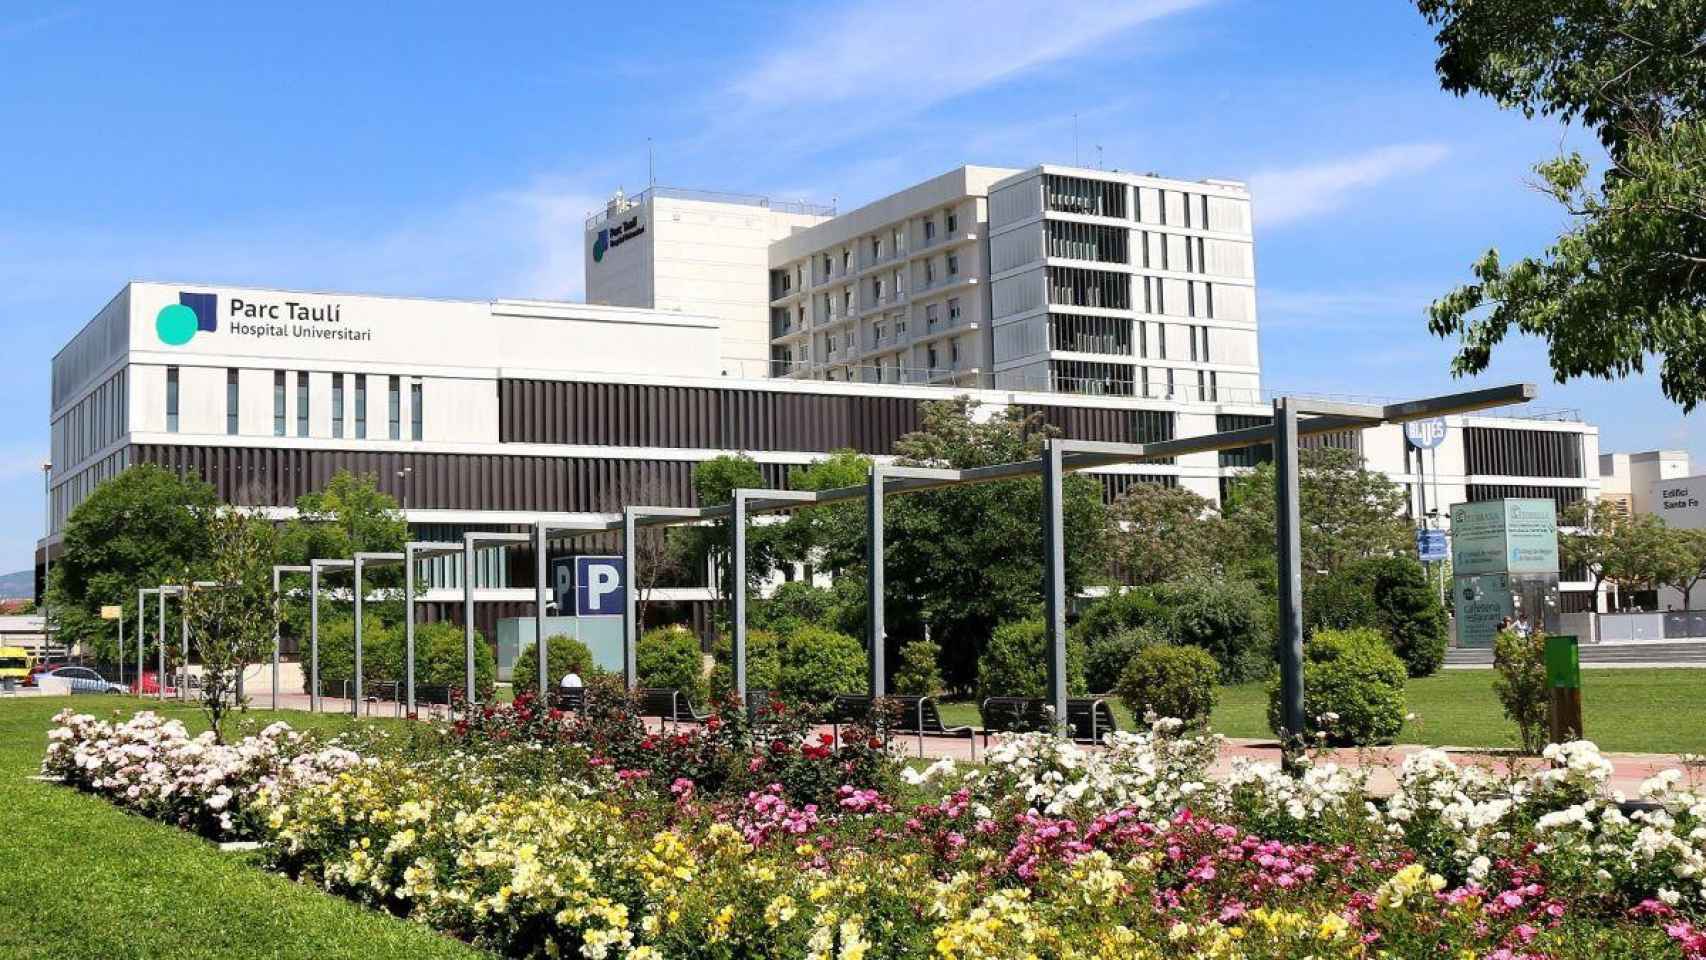 Imagen exterior del Hospital Universitari Parc Taulí, que cederá fármacos anti-Covid a países pobres / HOSPITAL UNIVERSITARI PARC TAULÍ